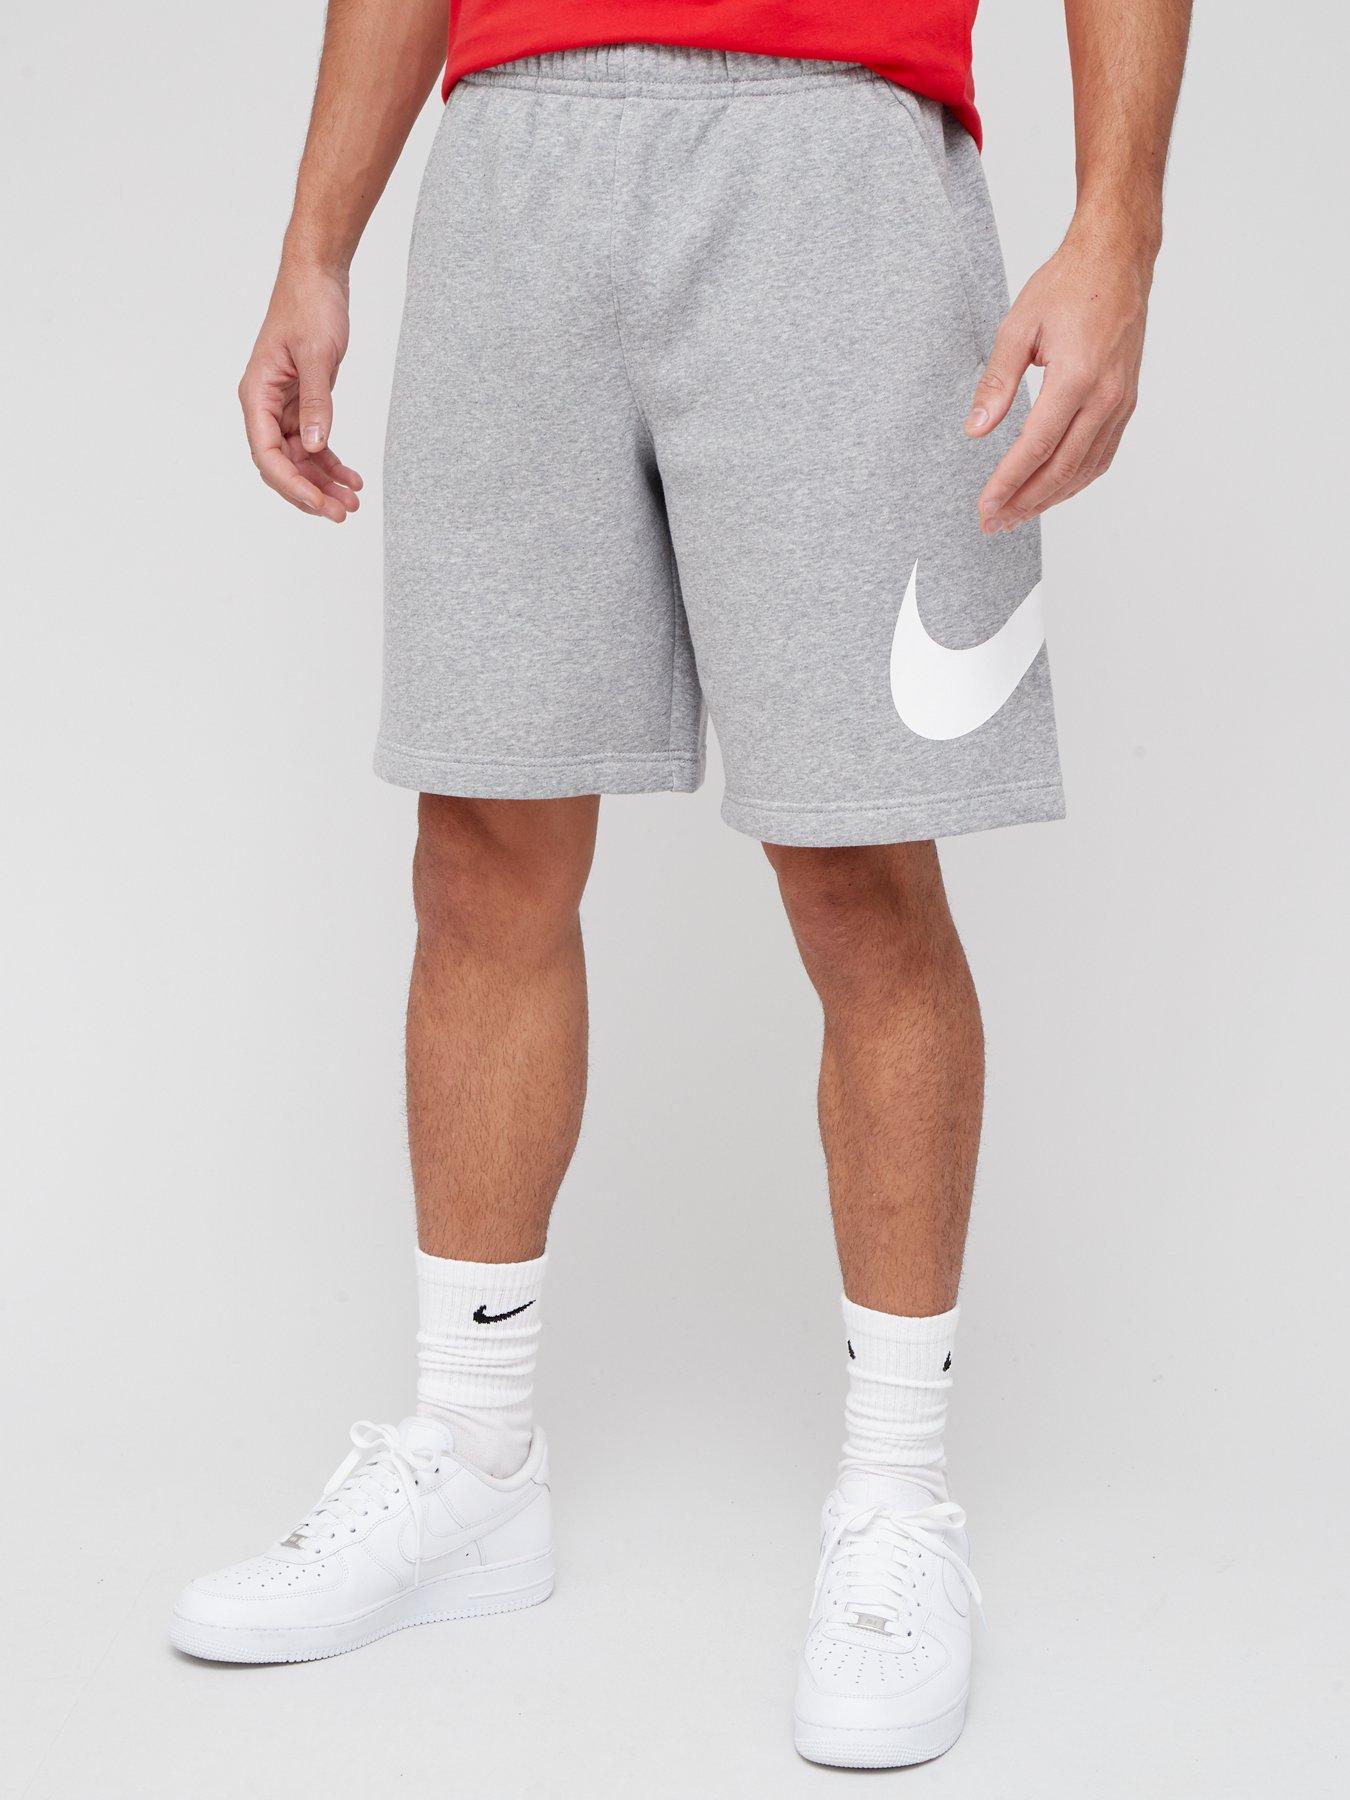 grey and white nike shorts